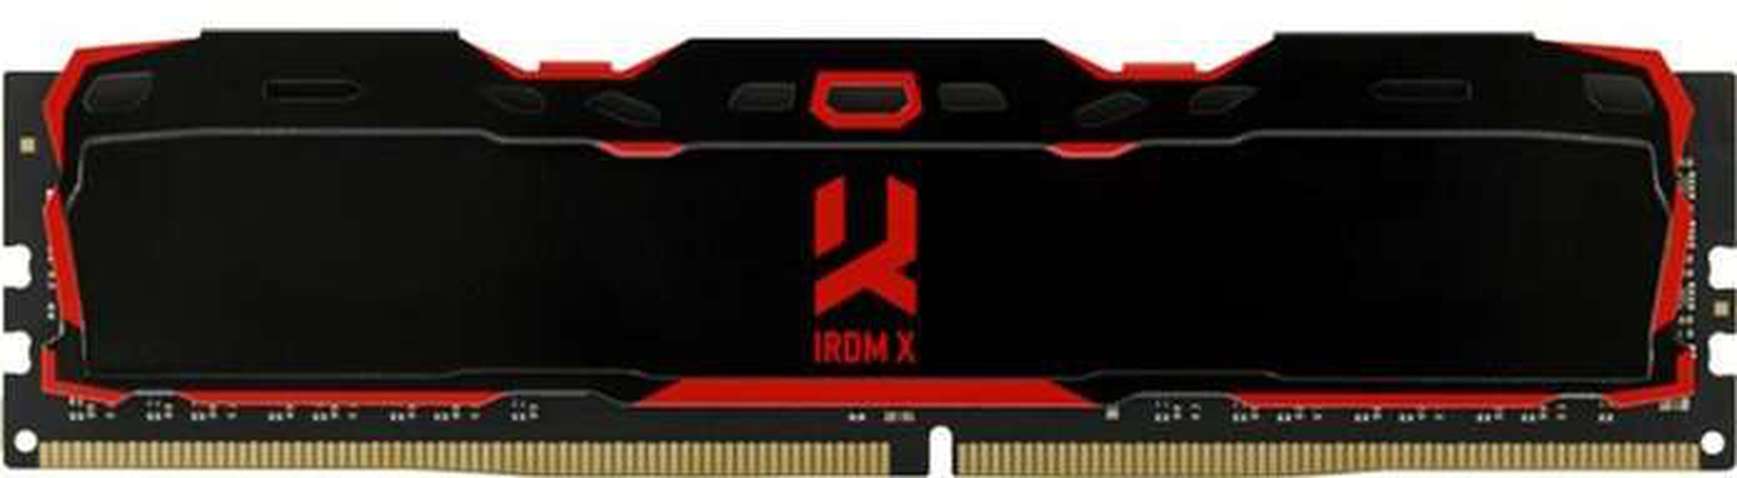 Оперативна пам'ять DDR4 8GB/3200 GOODRAM Iridium X Black (IR-X3200D464L16SA/8G)